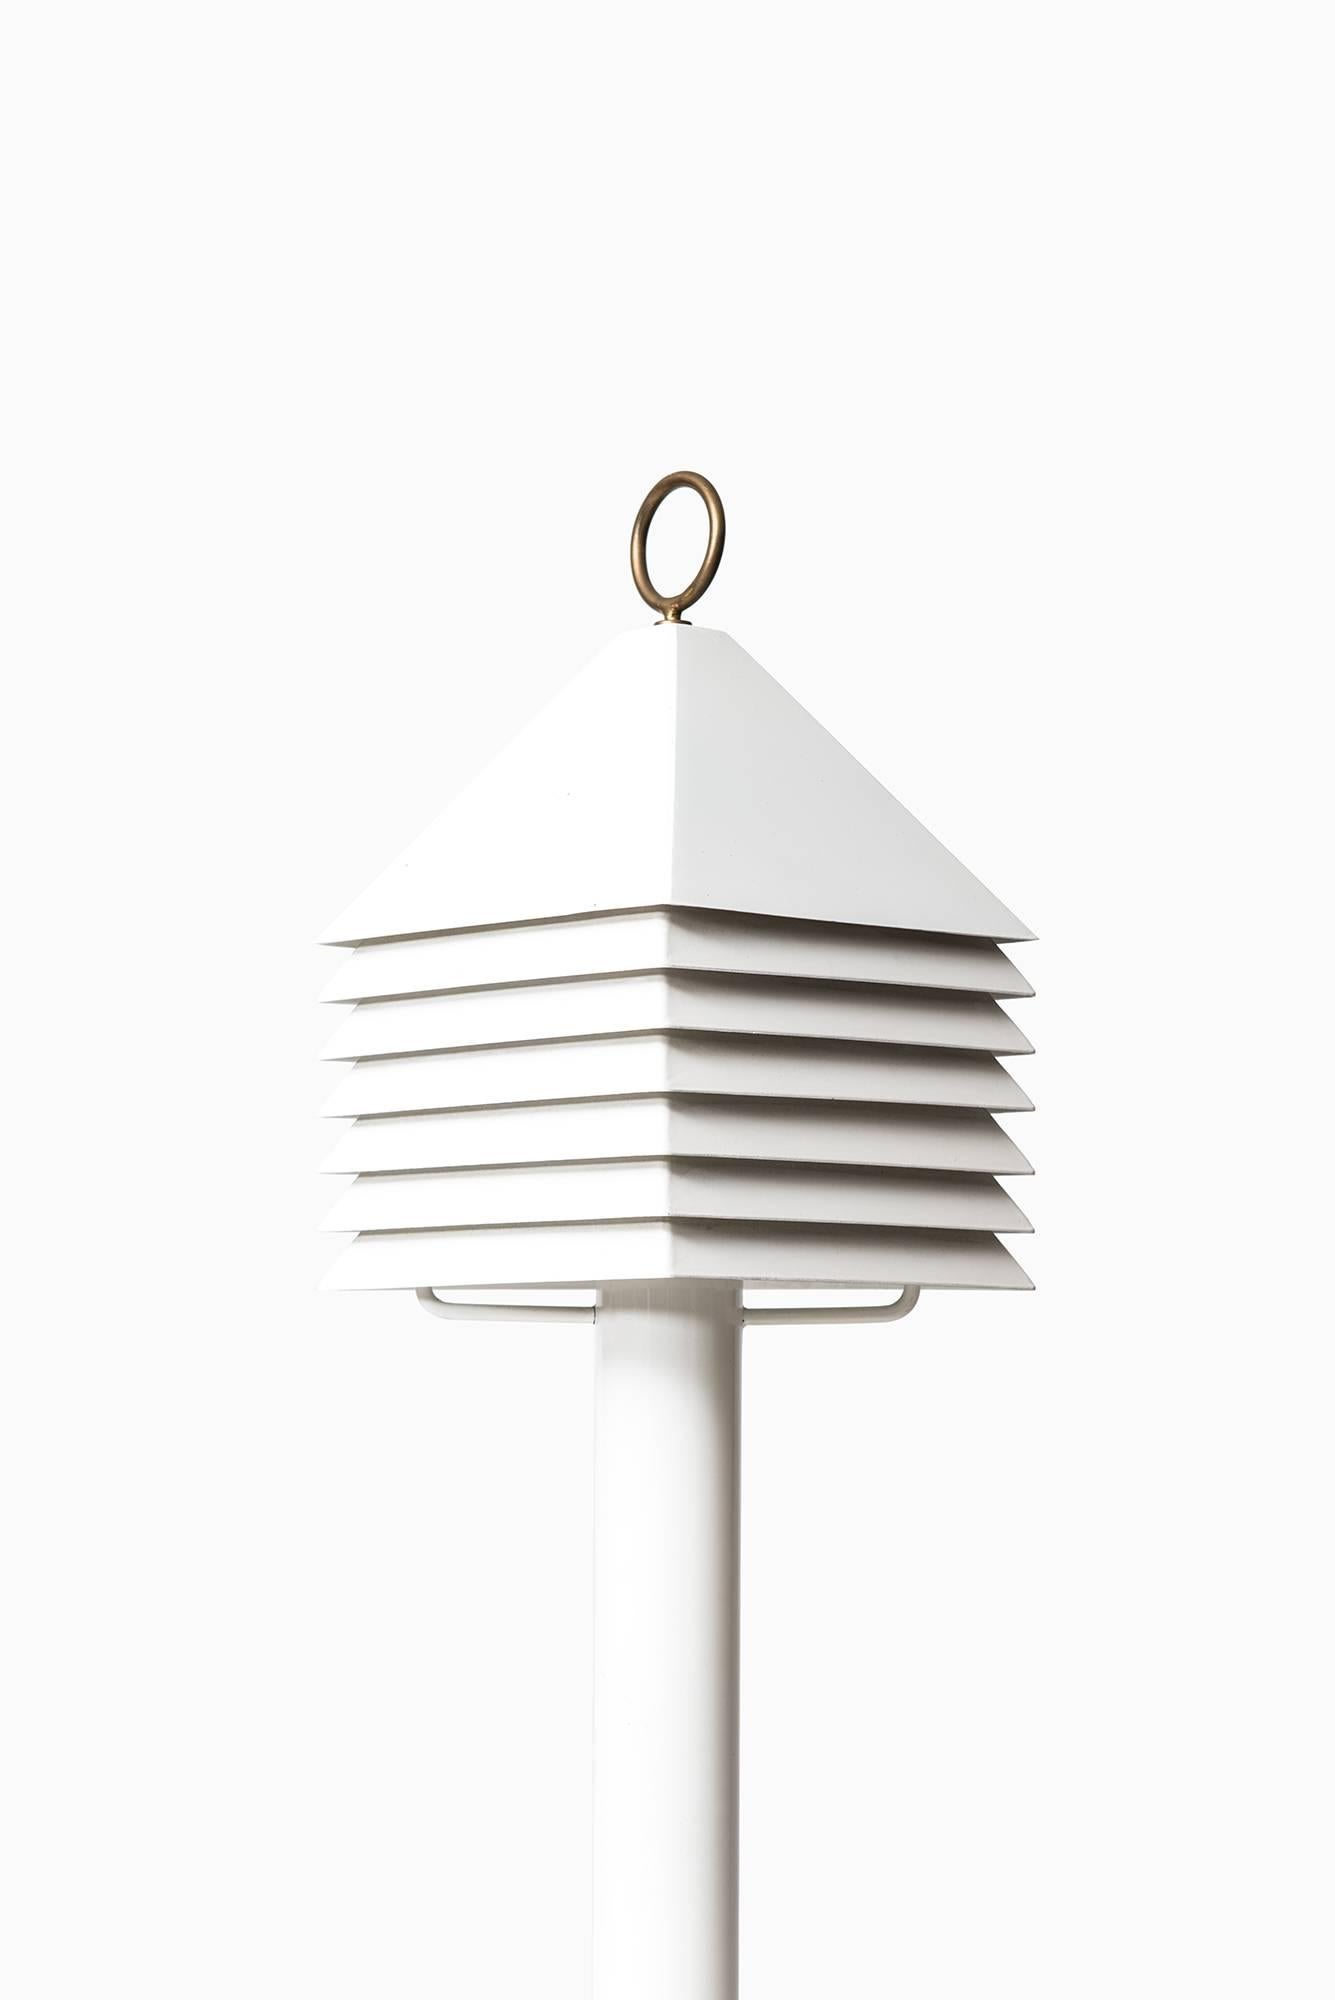 Rare lampe de table / lampadaire conçue par Hans-Agne Jakobsson. Produit par Hans-Agne Jakobsson AB à Markaryd, Suède.